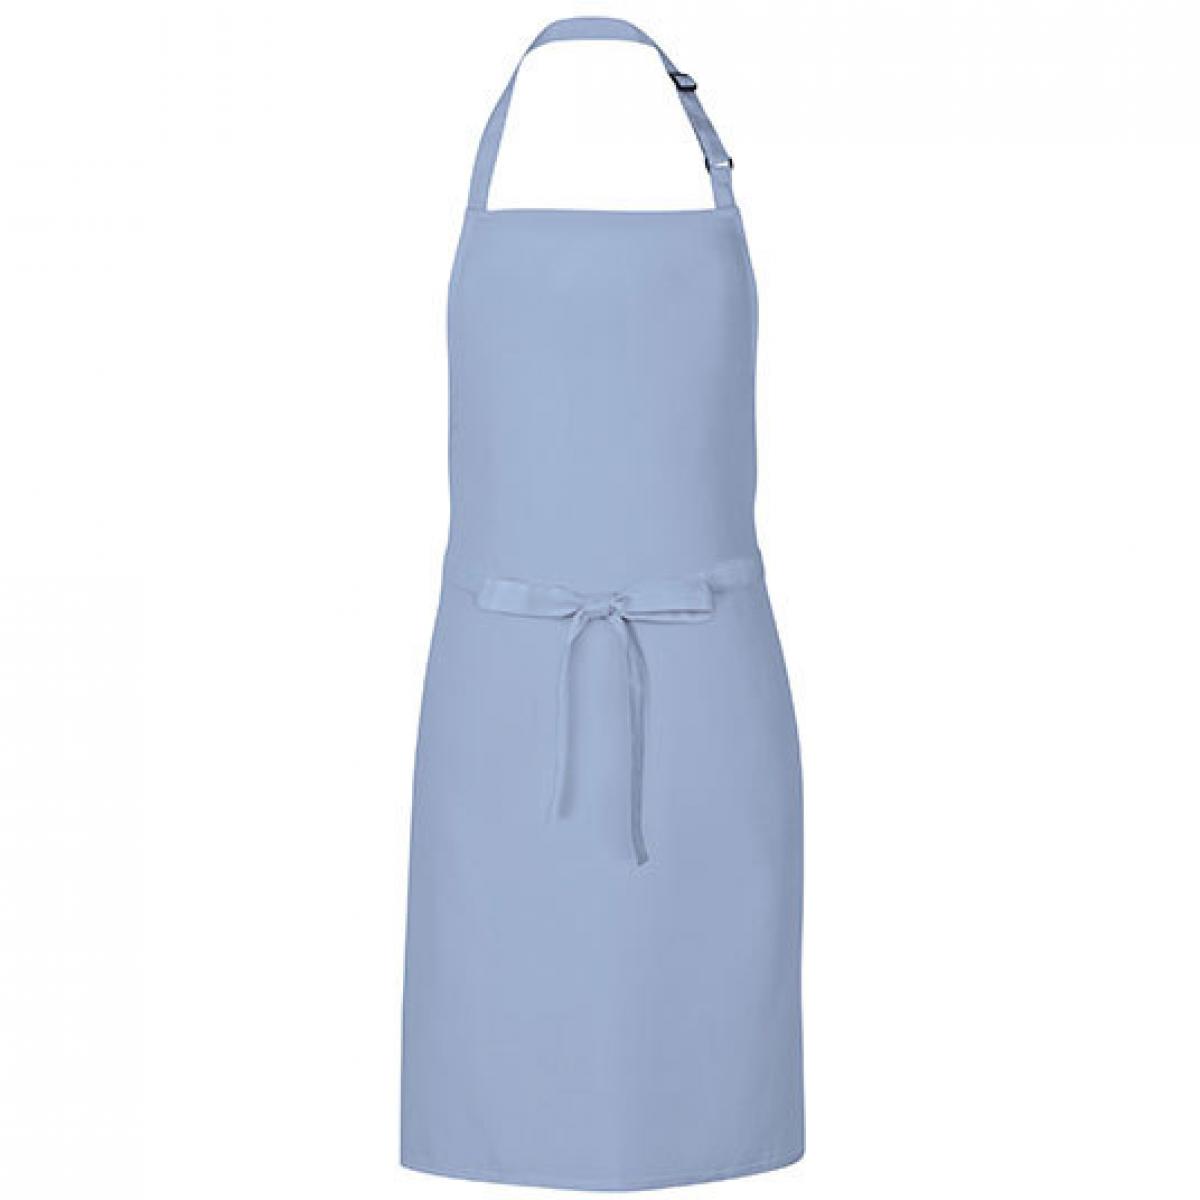 Hersteller: Link Kitchen Wear Herstellernummer: MS8572 Artikelbezeichnung: Multi Apron - 72 x 85 cm - Waschbar bis 60 °C Farbe: Light Blue (ca. Pantone 2708)